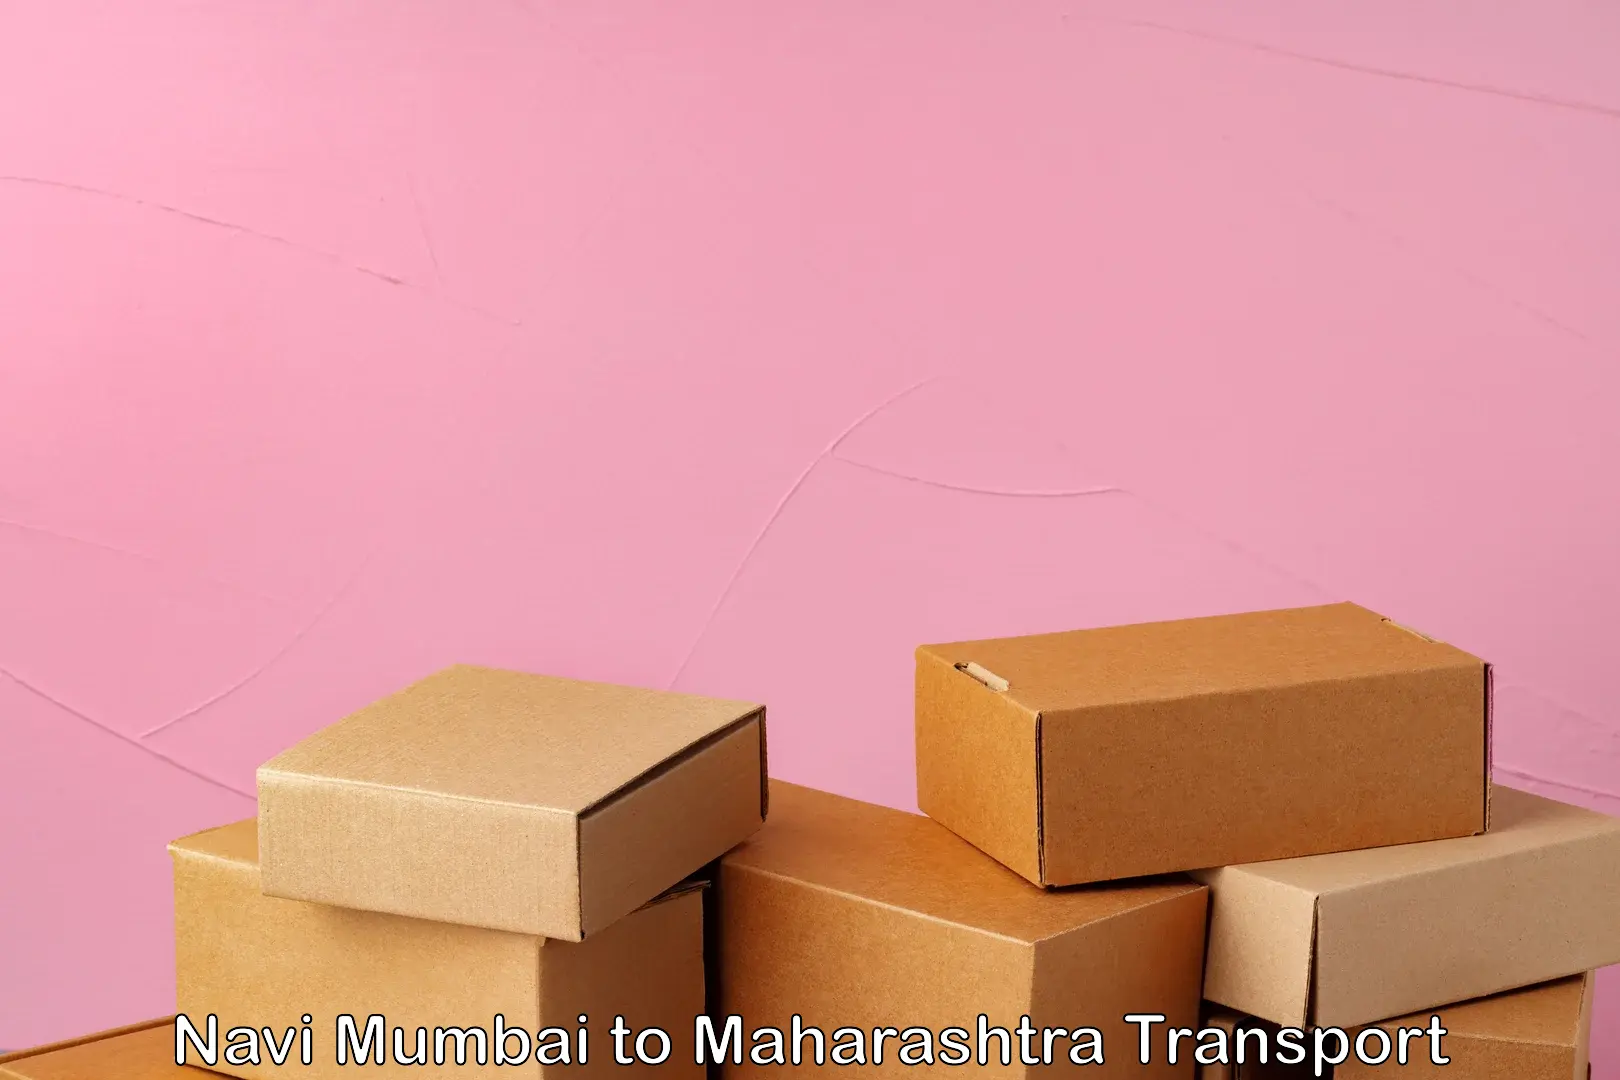 Truck transport companies in India Navi Mumbai to Maharashtra